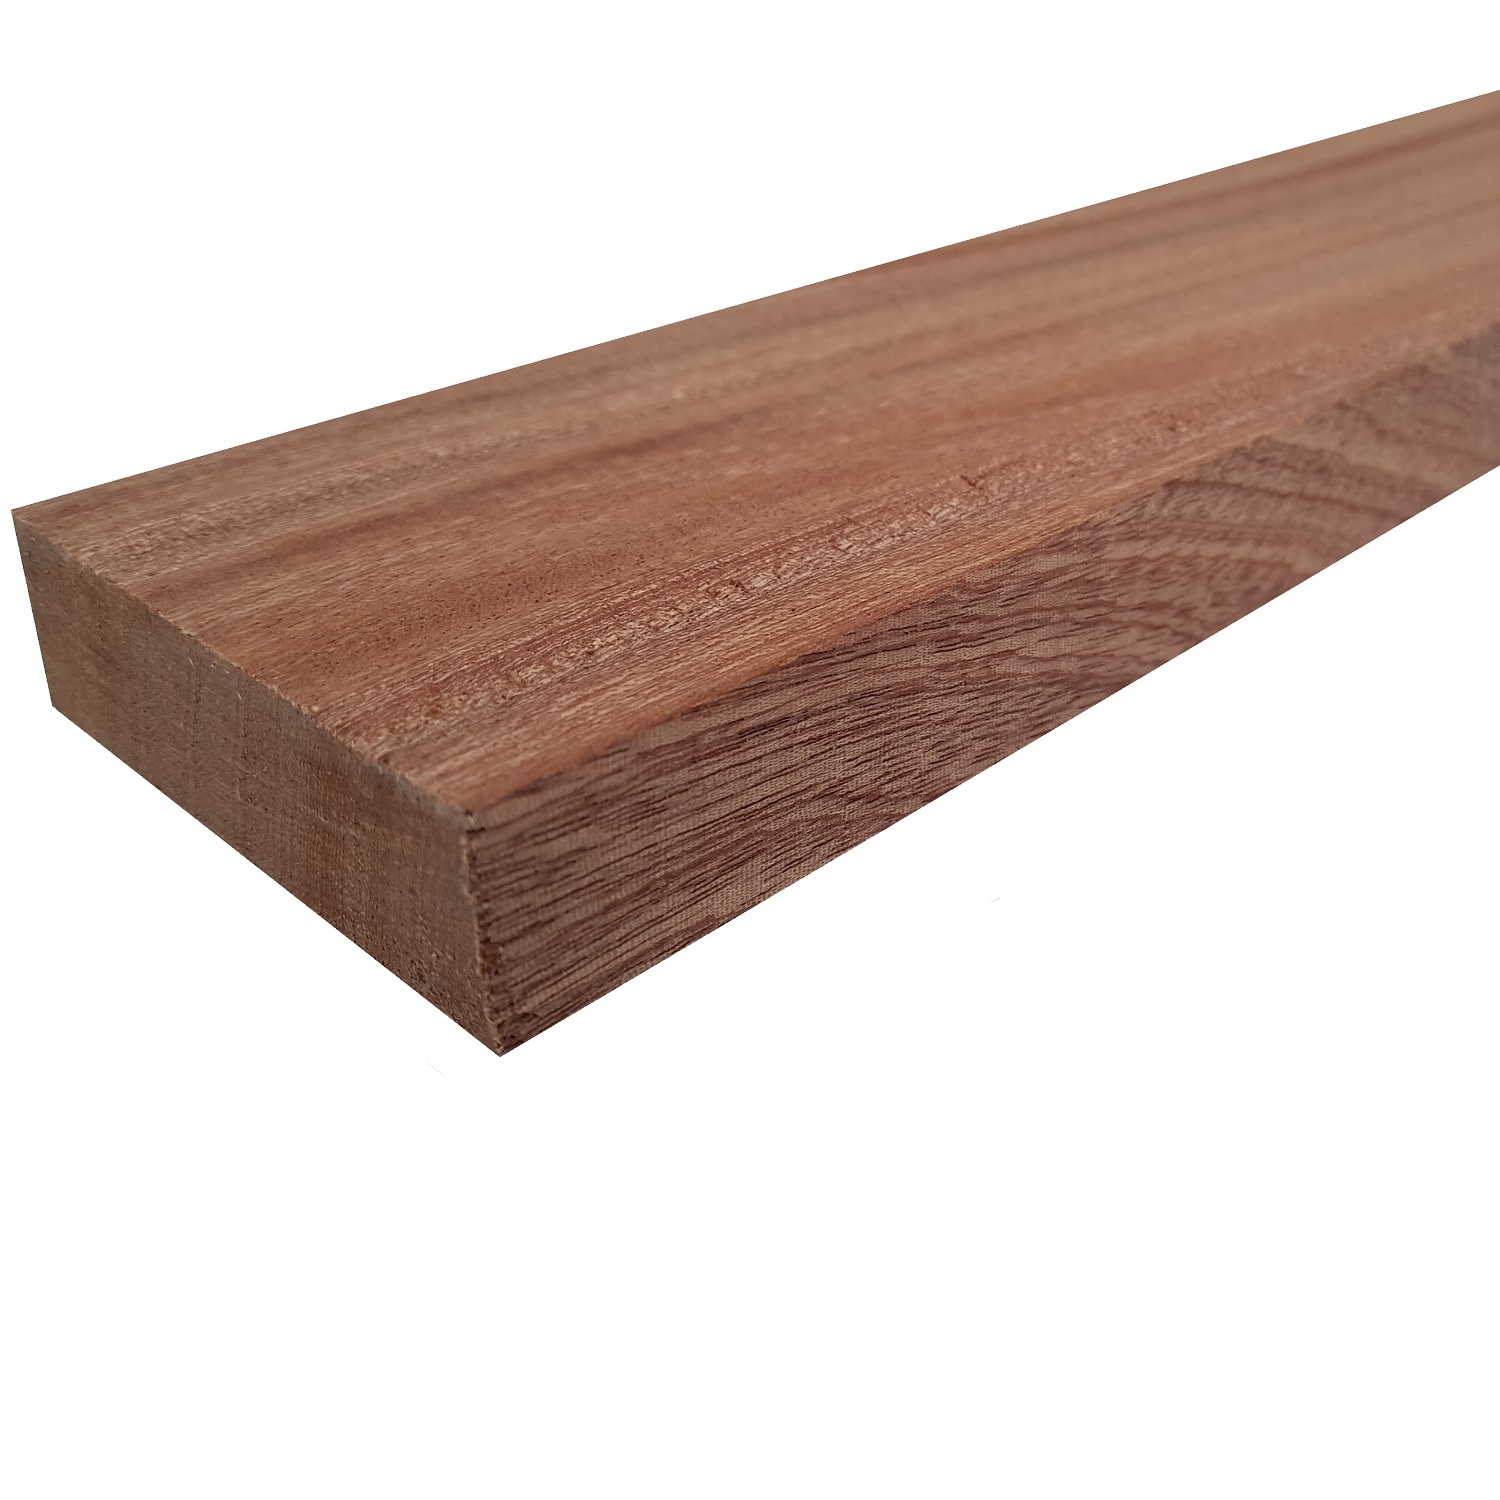 Tavola legno di Mogano Refilato Piallato mm 21 x 110 x 3000